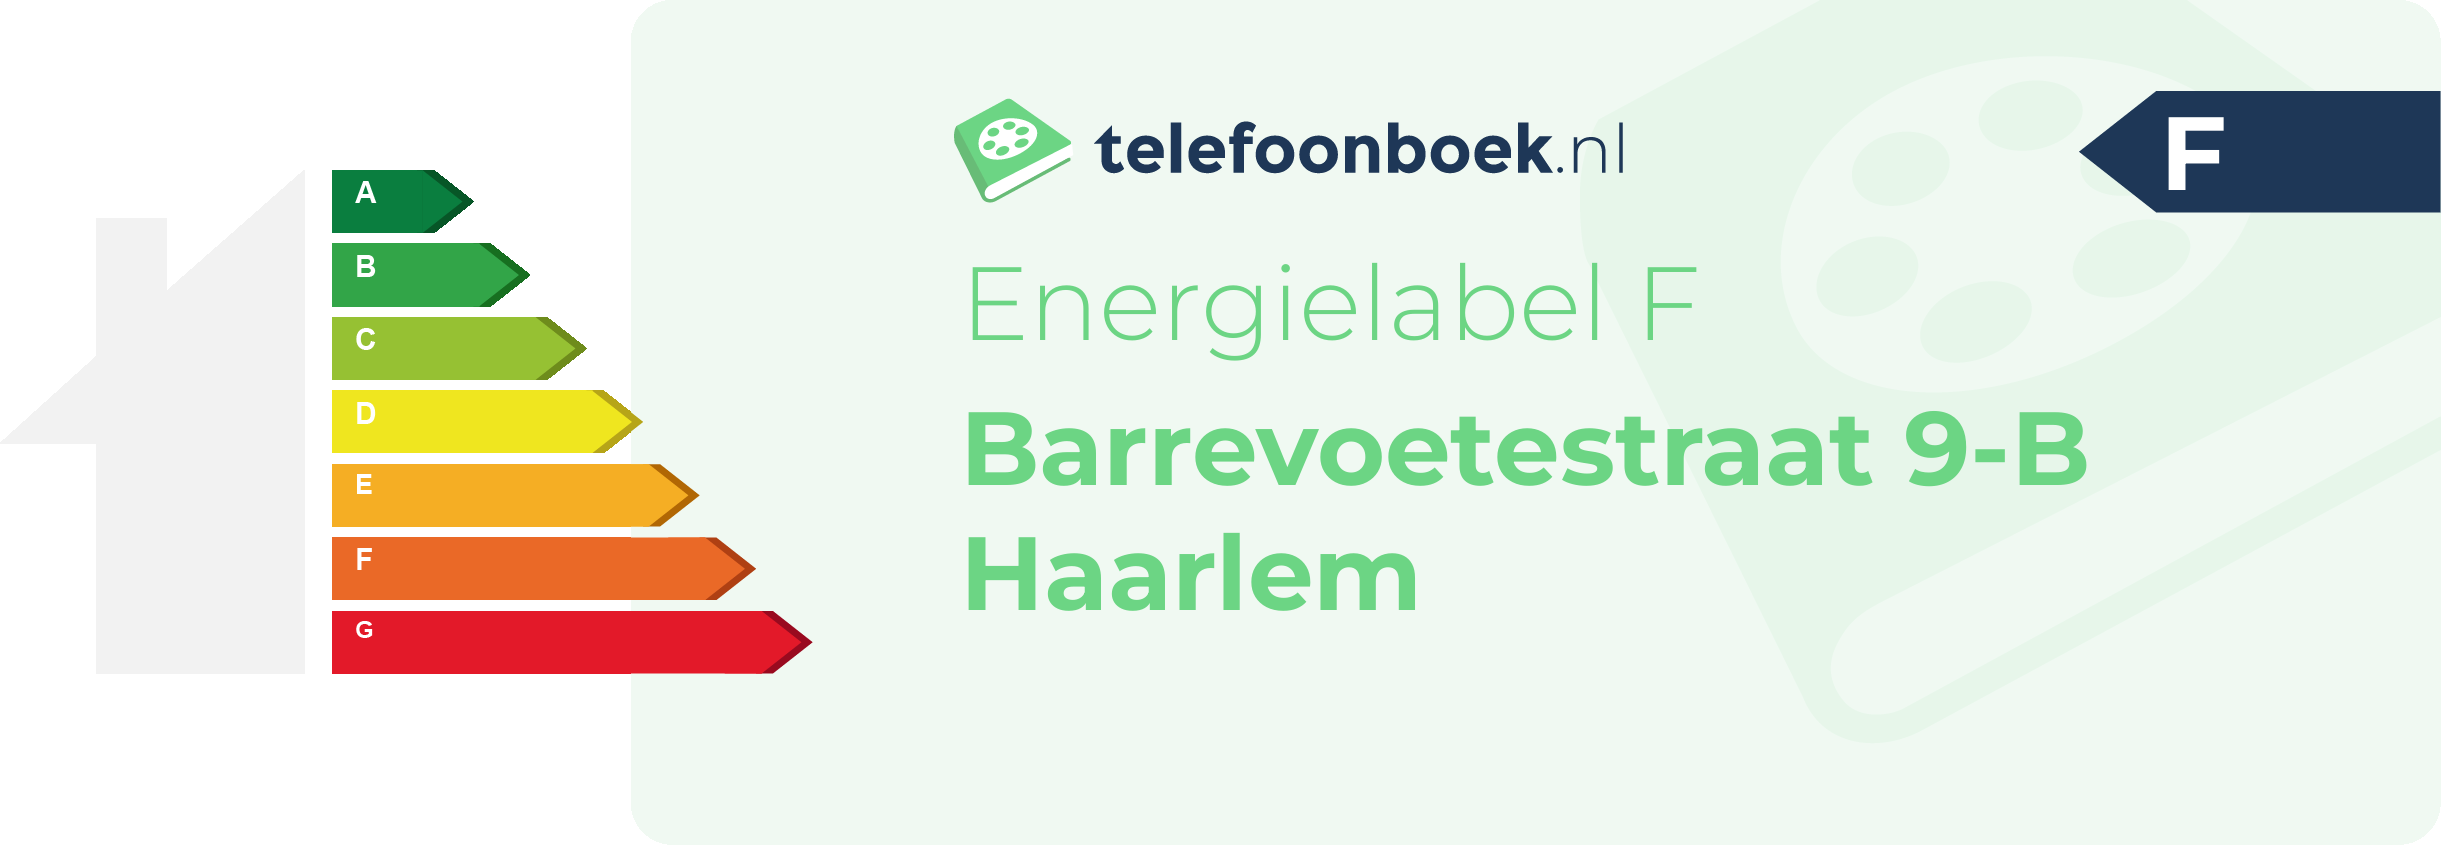 Energielabel Barrevoetestraat 9-B Haarlem